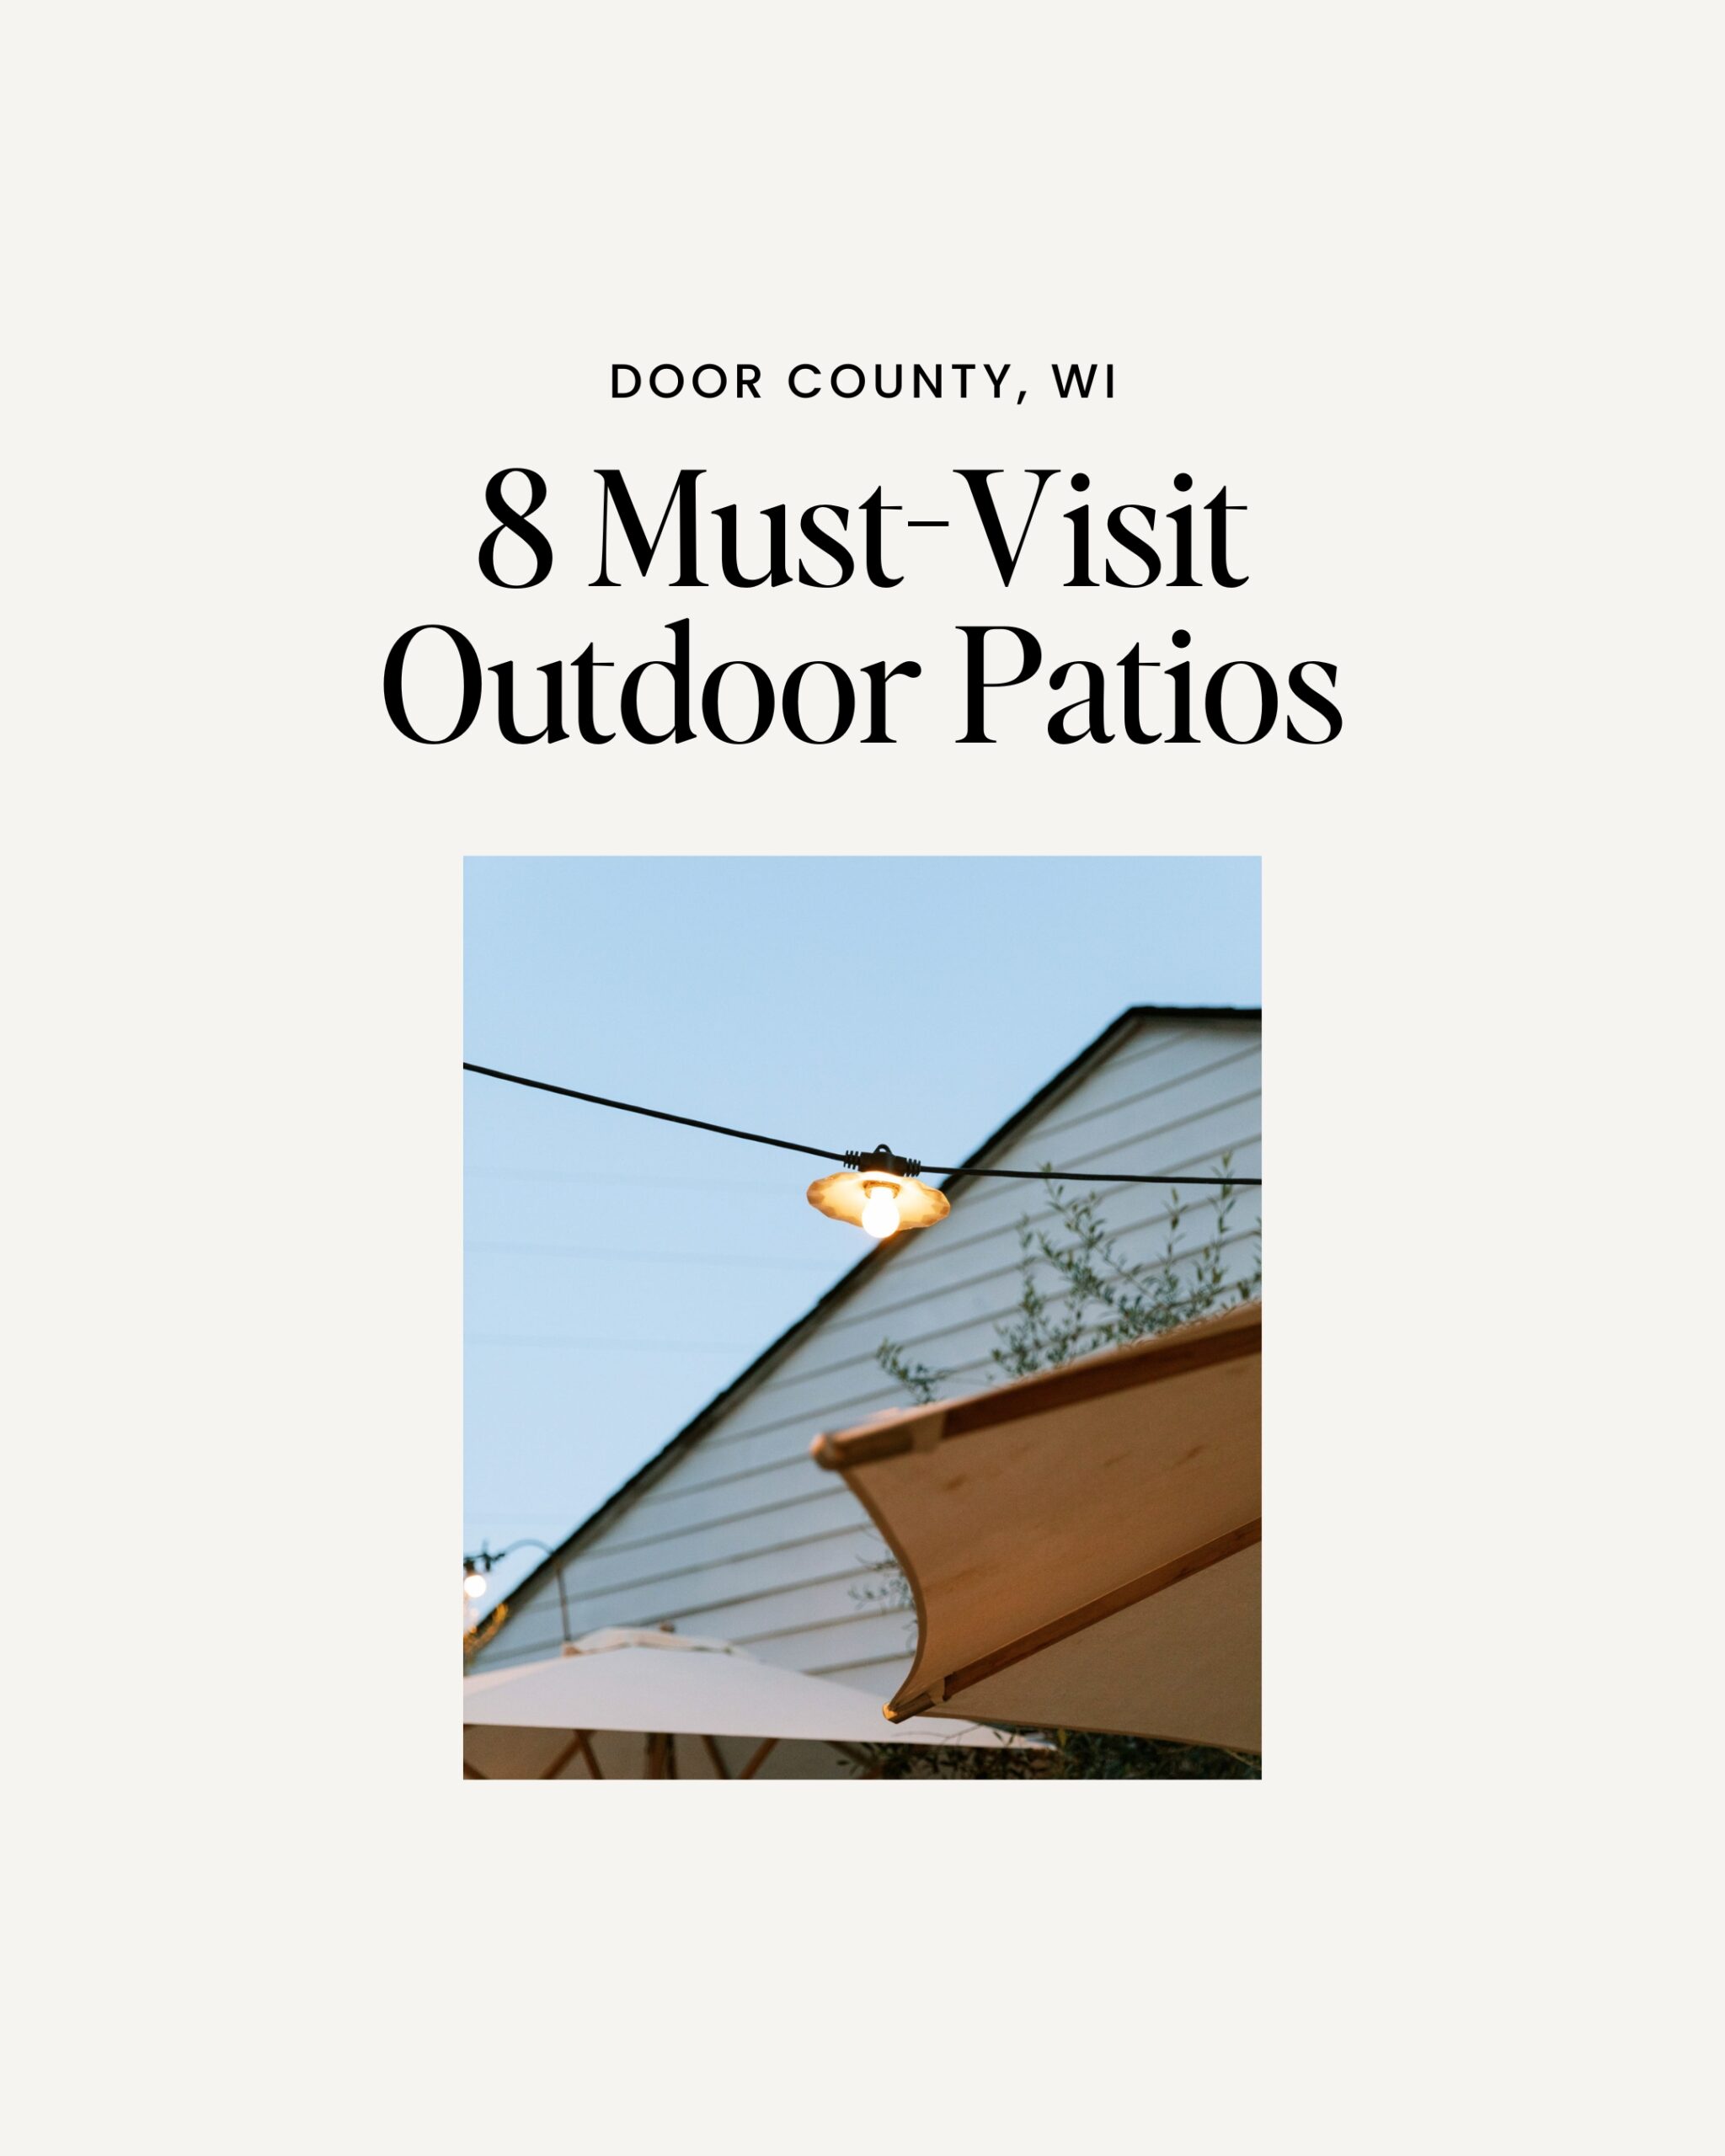 8 must-visit outdoor patios in Door County